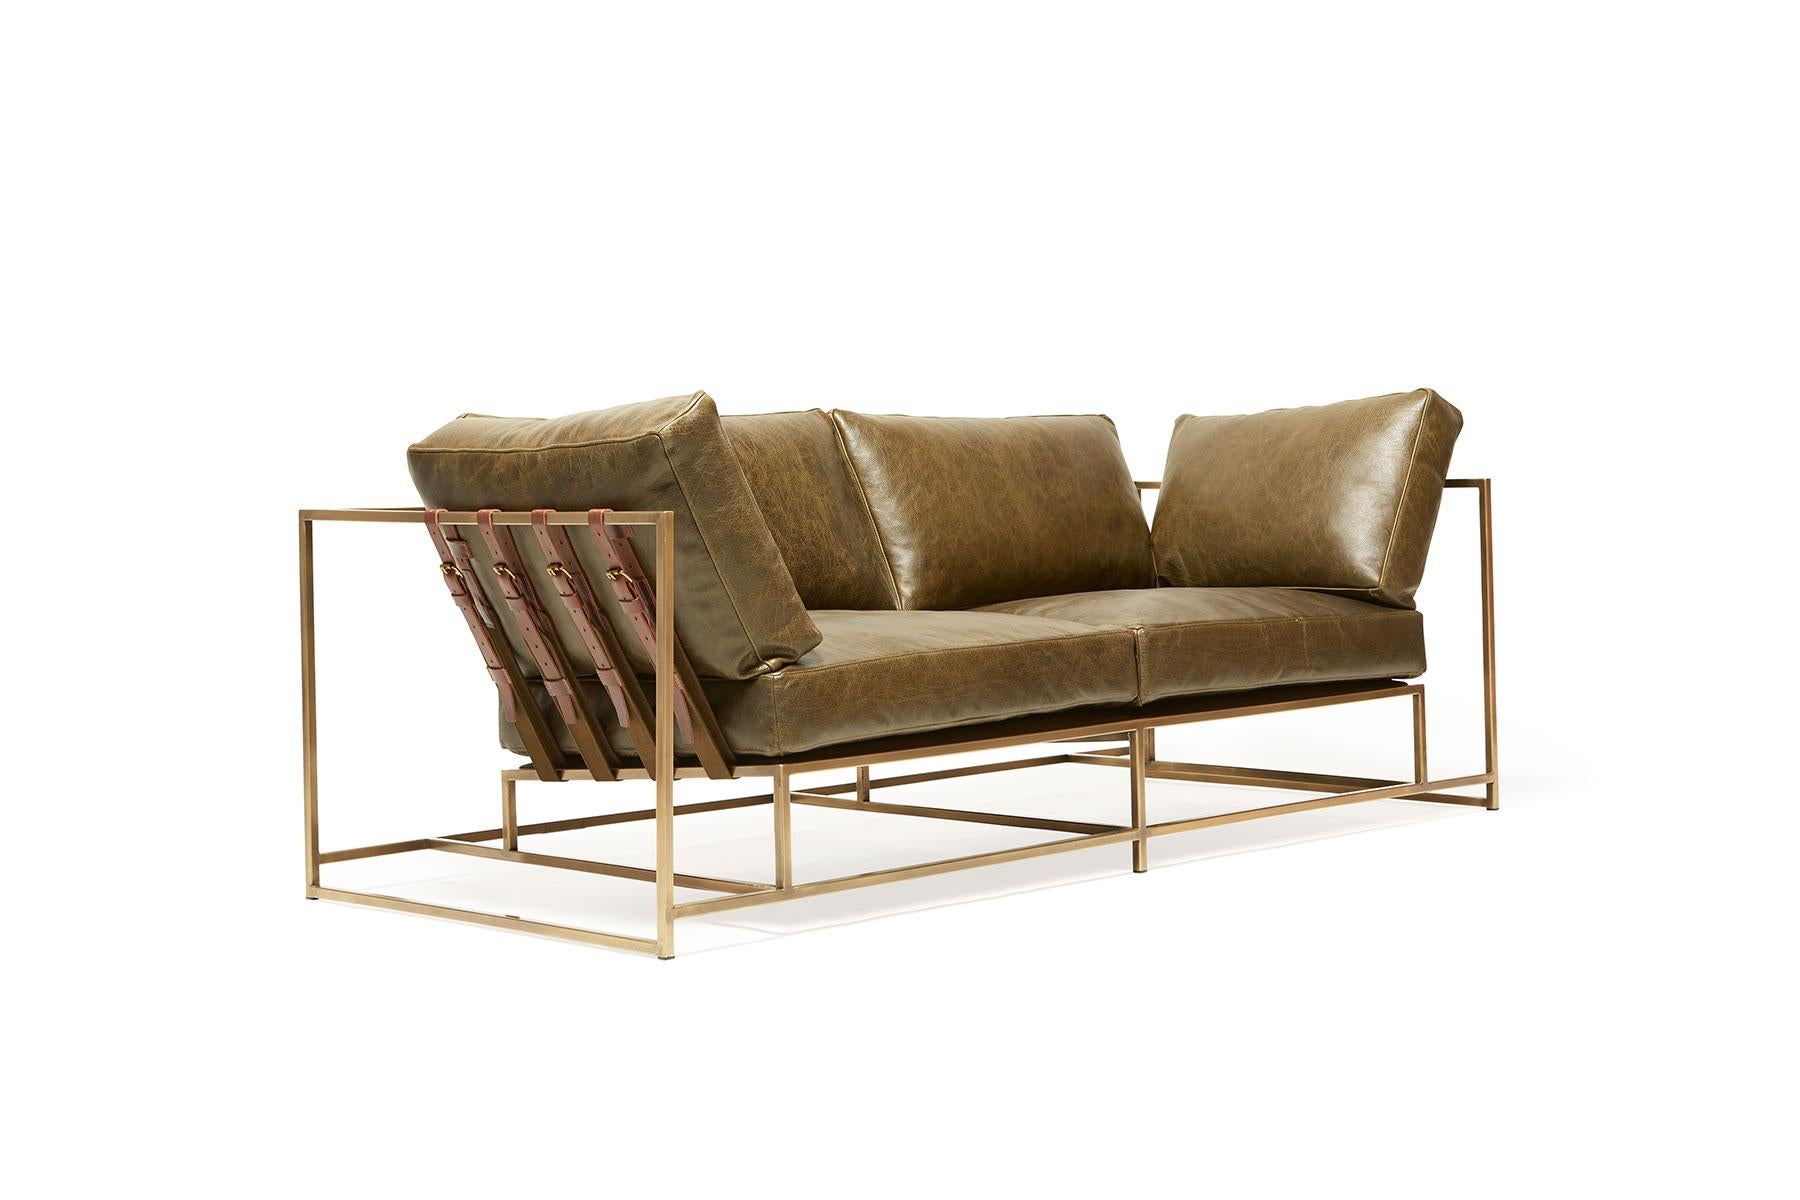 Das Zweisitzer-Sofa ist etwas kleiner und eignet sich ideal für Wohnungen oder kleinere Räume, die eine geringere Stellfläche erfordern.

Diese Variante ist mit einem weichen, warmen olivgrünen Leder von Moore & Giles gepolstert. Die